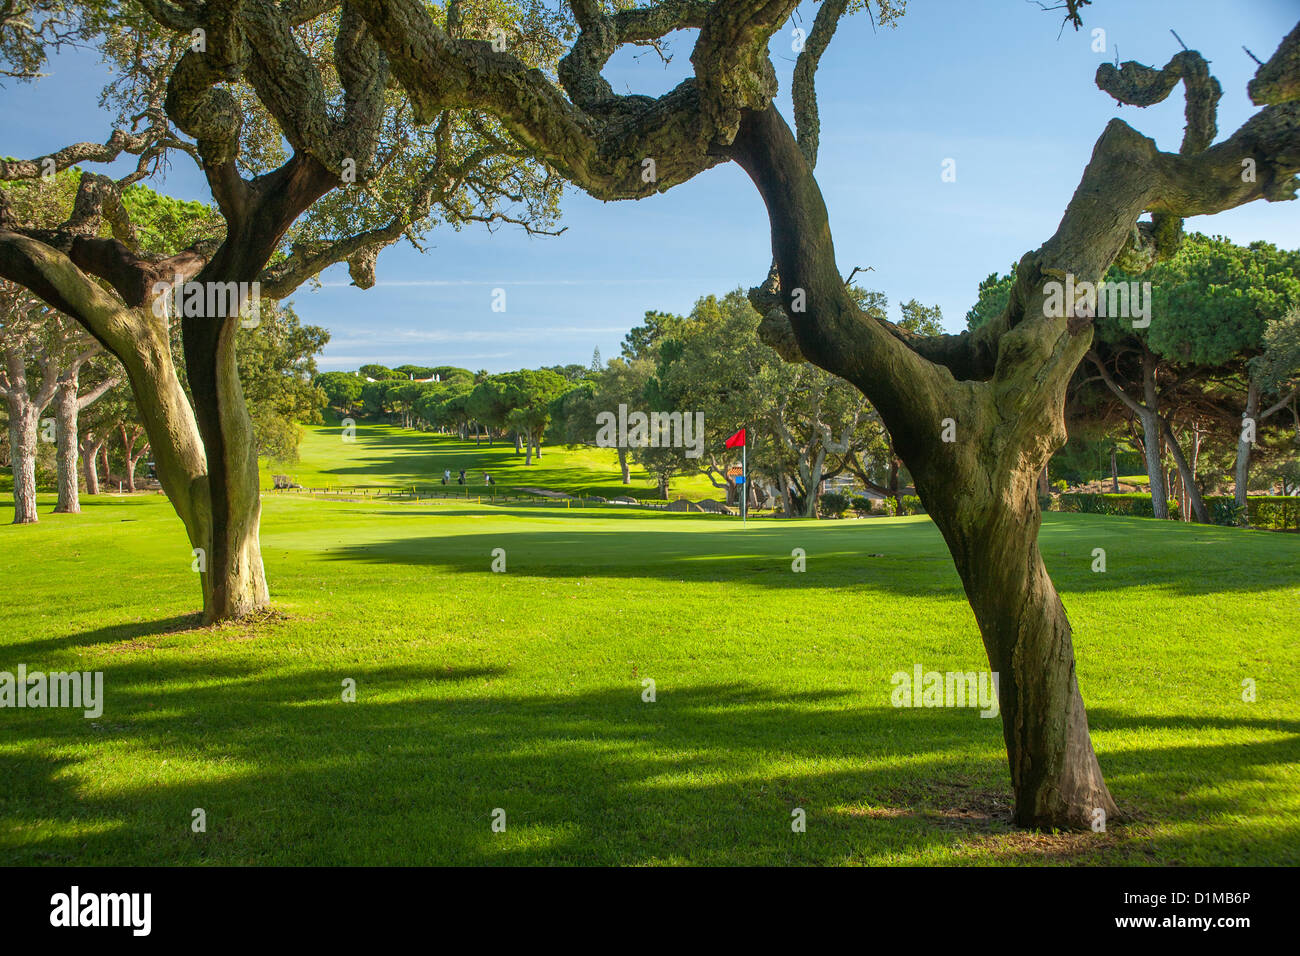 Campo de Golf de gnarled alcornoques alrededor y una bandera verde Foto de stock